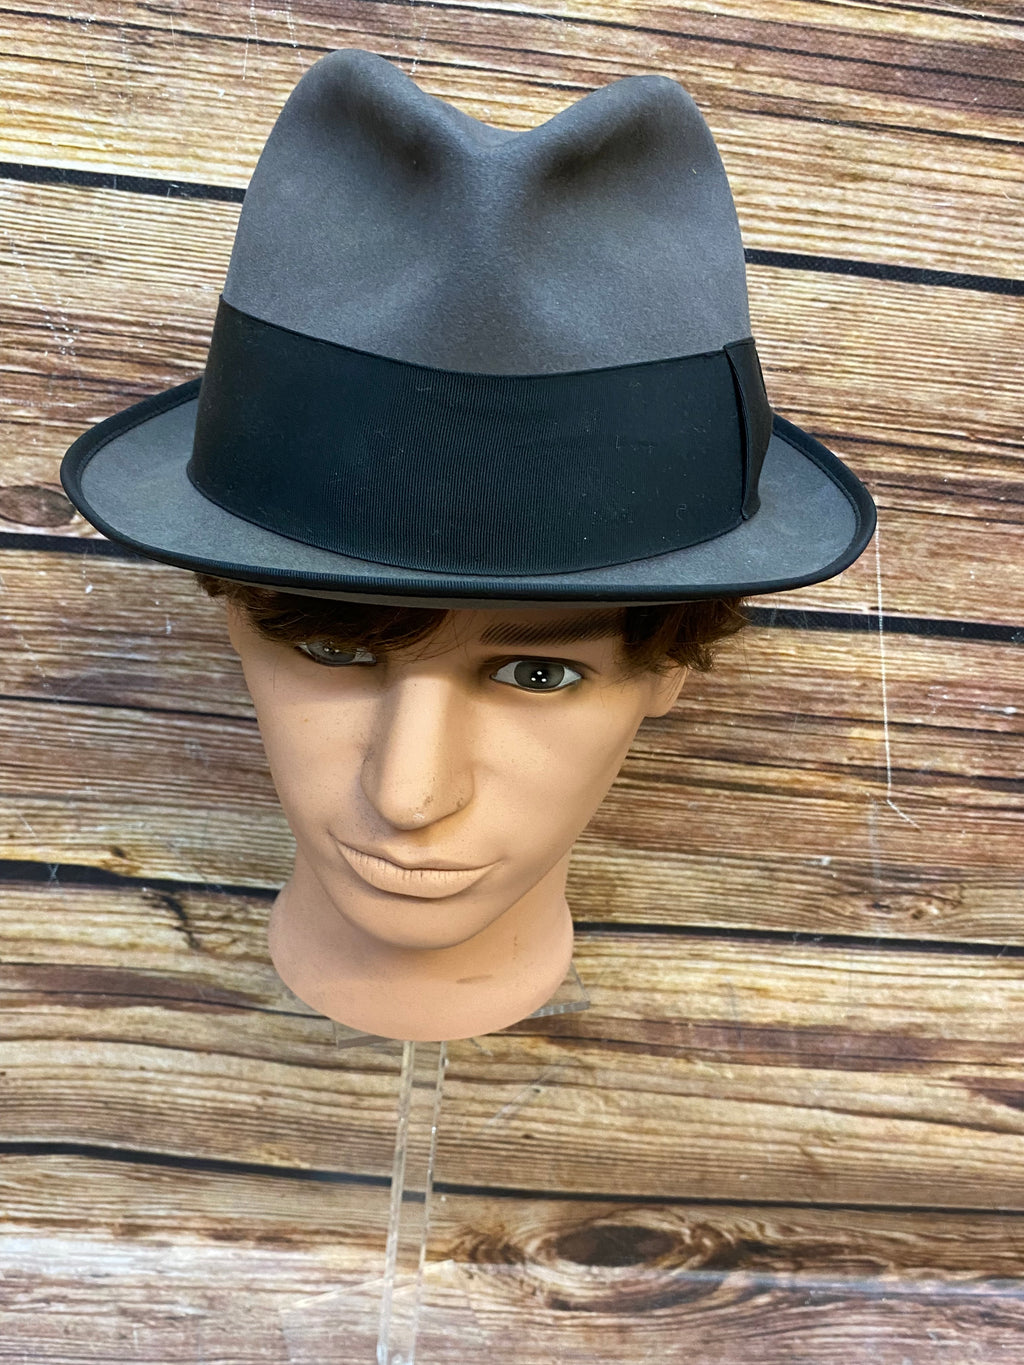 Hochwertiger Vintage Hut Herren grau/schwarz Gr.57 Fedora